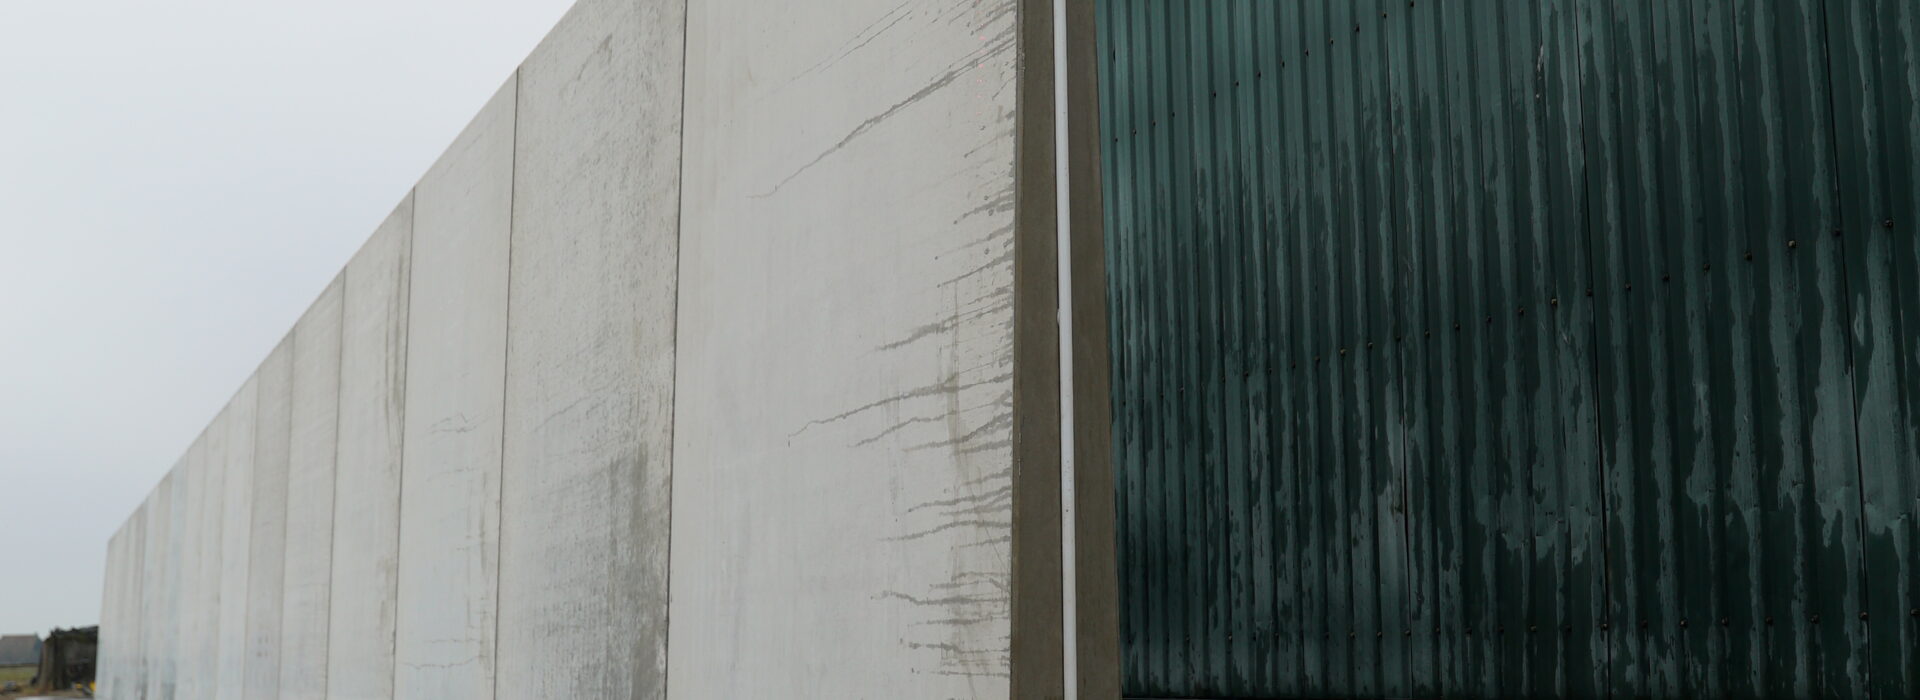 Bosch Beton - Sleufsilo van keerwanden met extra lange hak voor afdeksysteem in Blessum